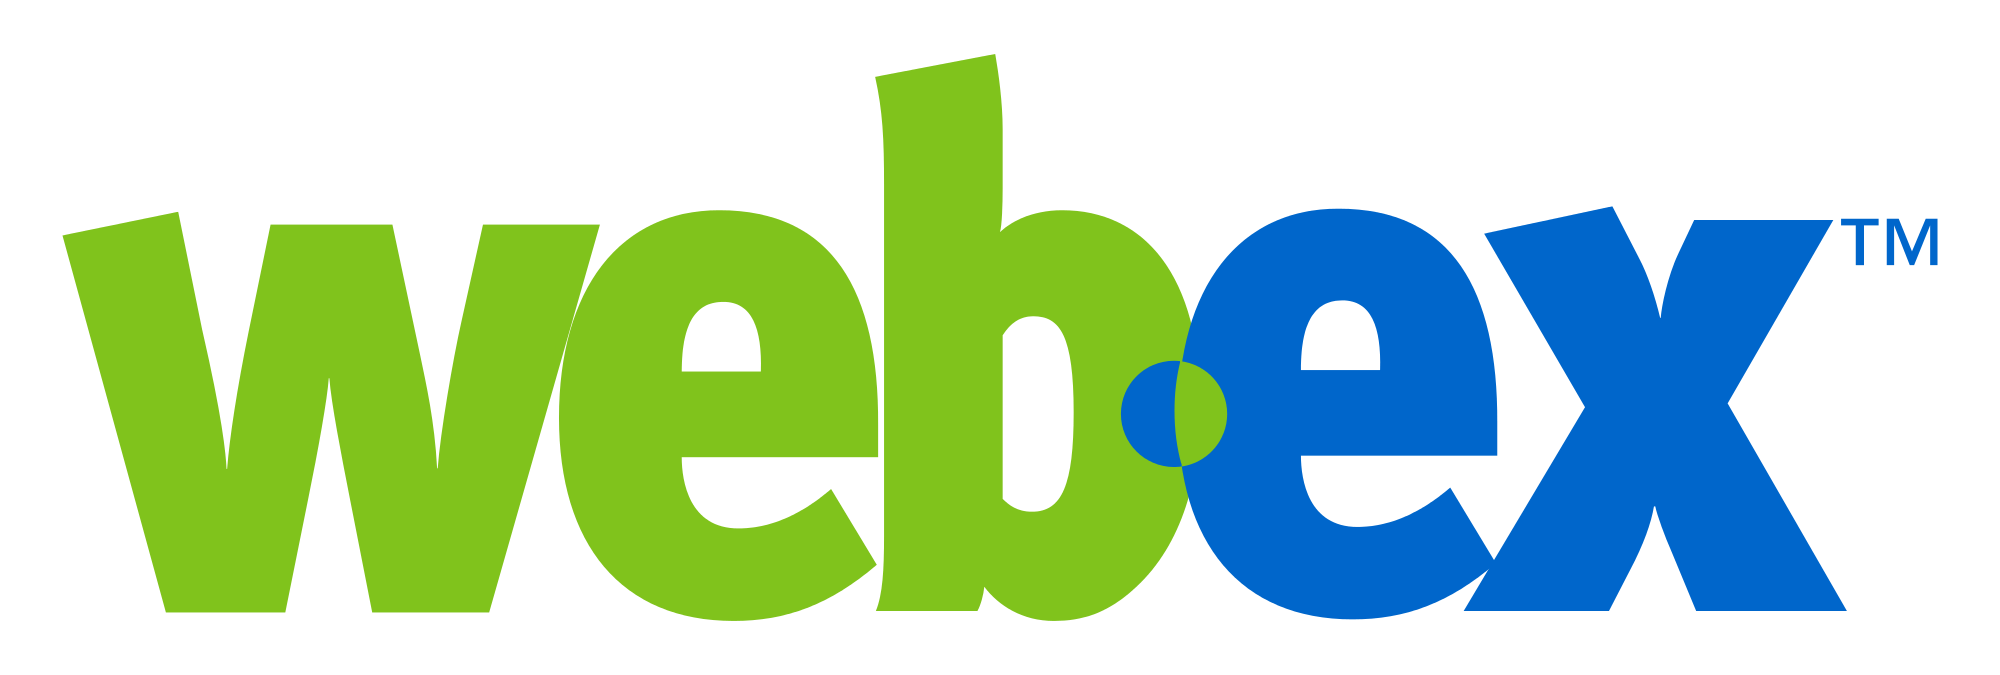 New WebEx Logo - File:WebEx logo.svg - Wikimedia Commons